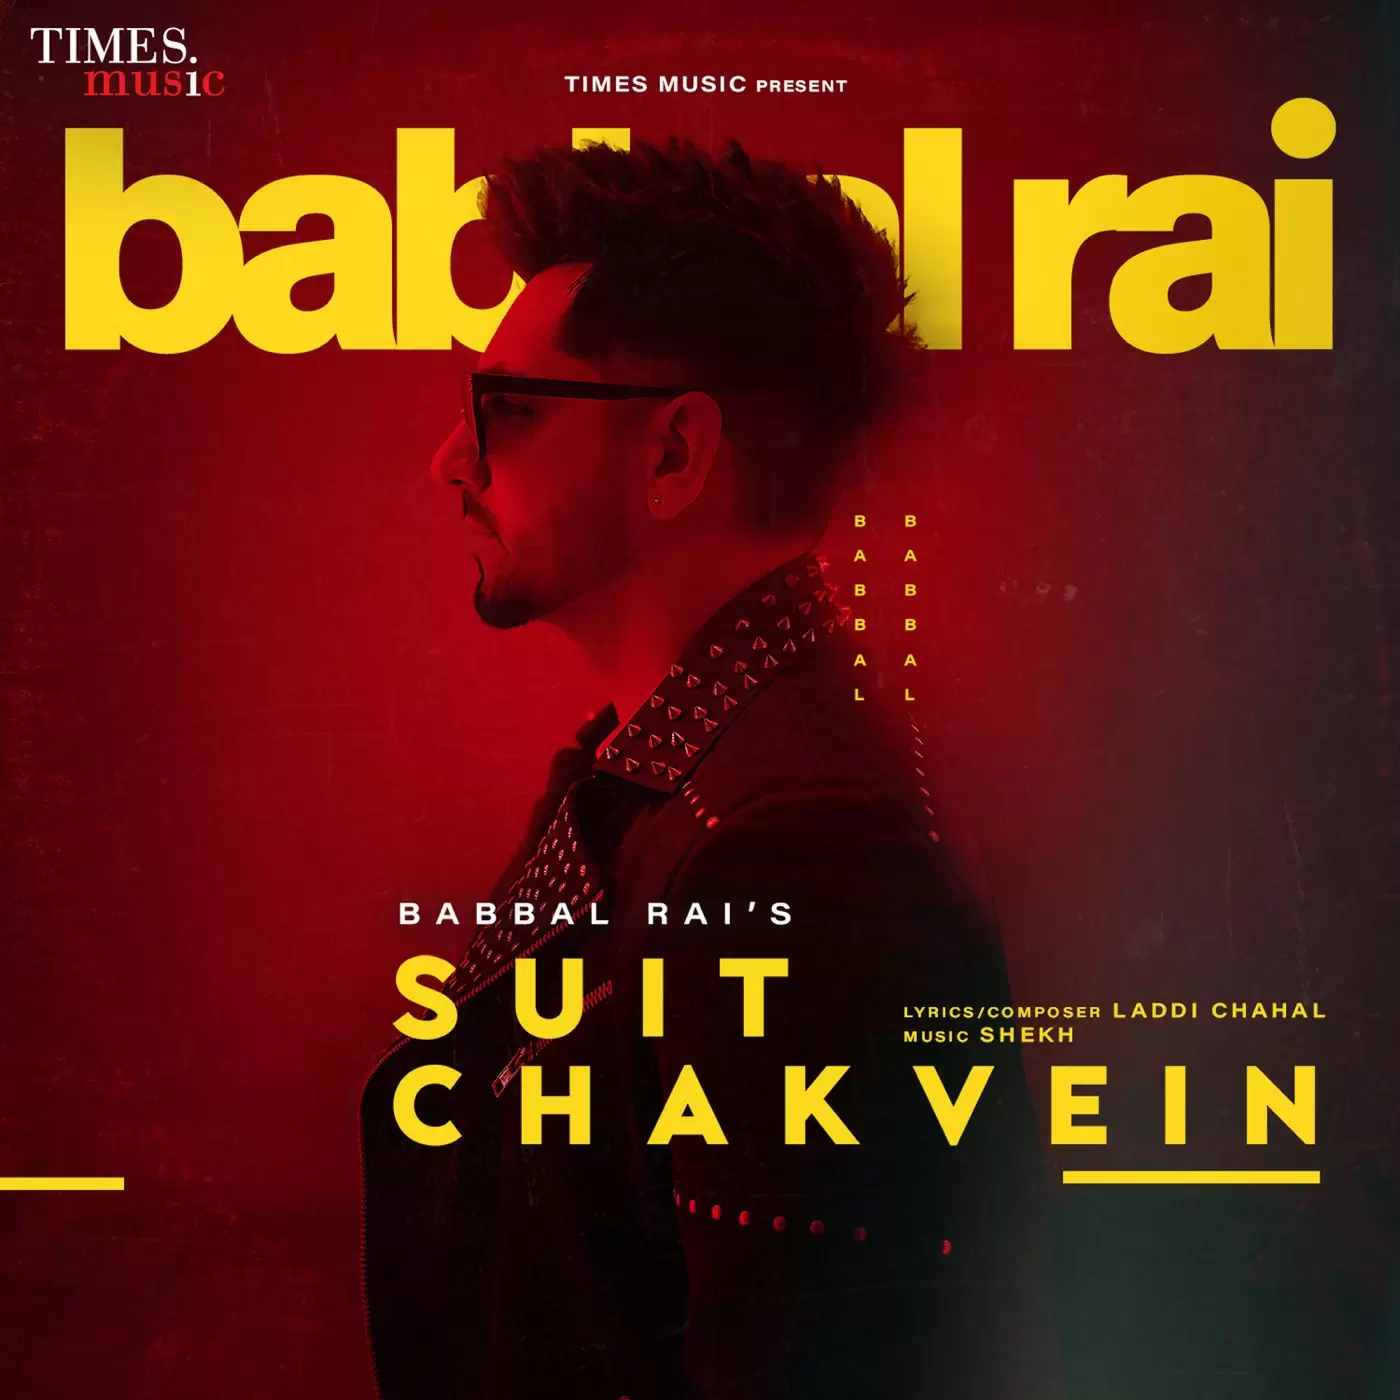 Suit Chakvein - Single Song by Babbal Rai - Mr-Punjab